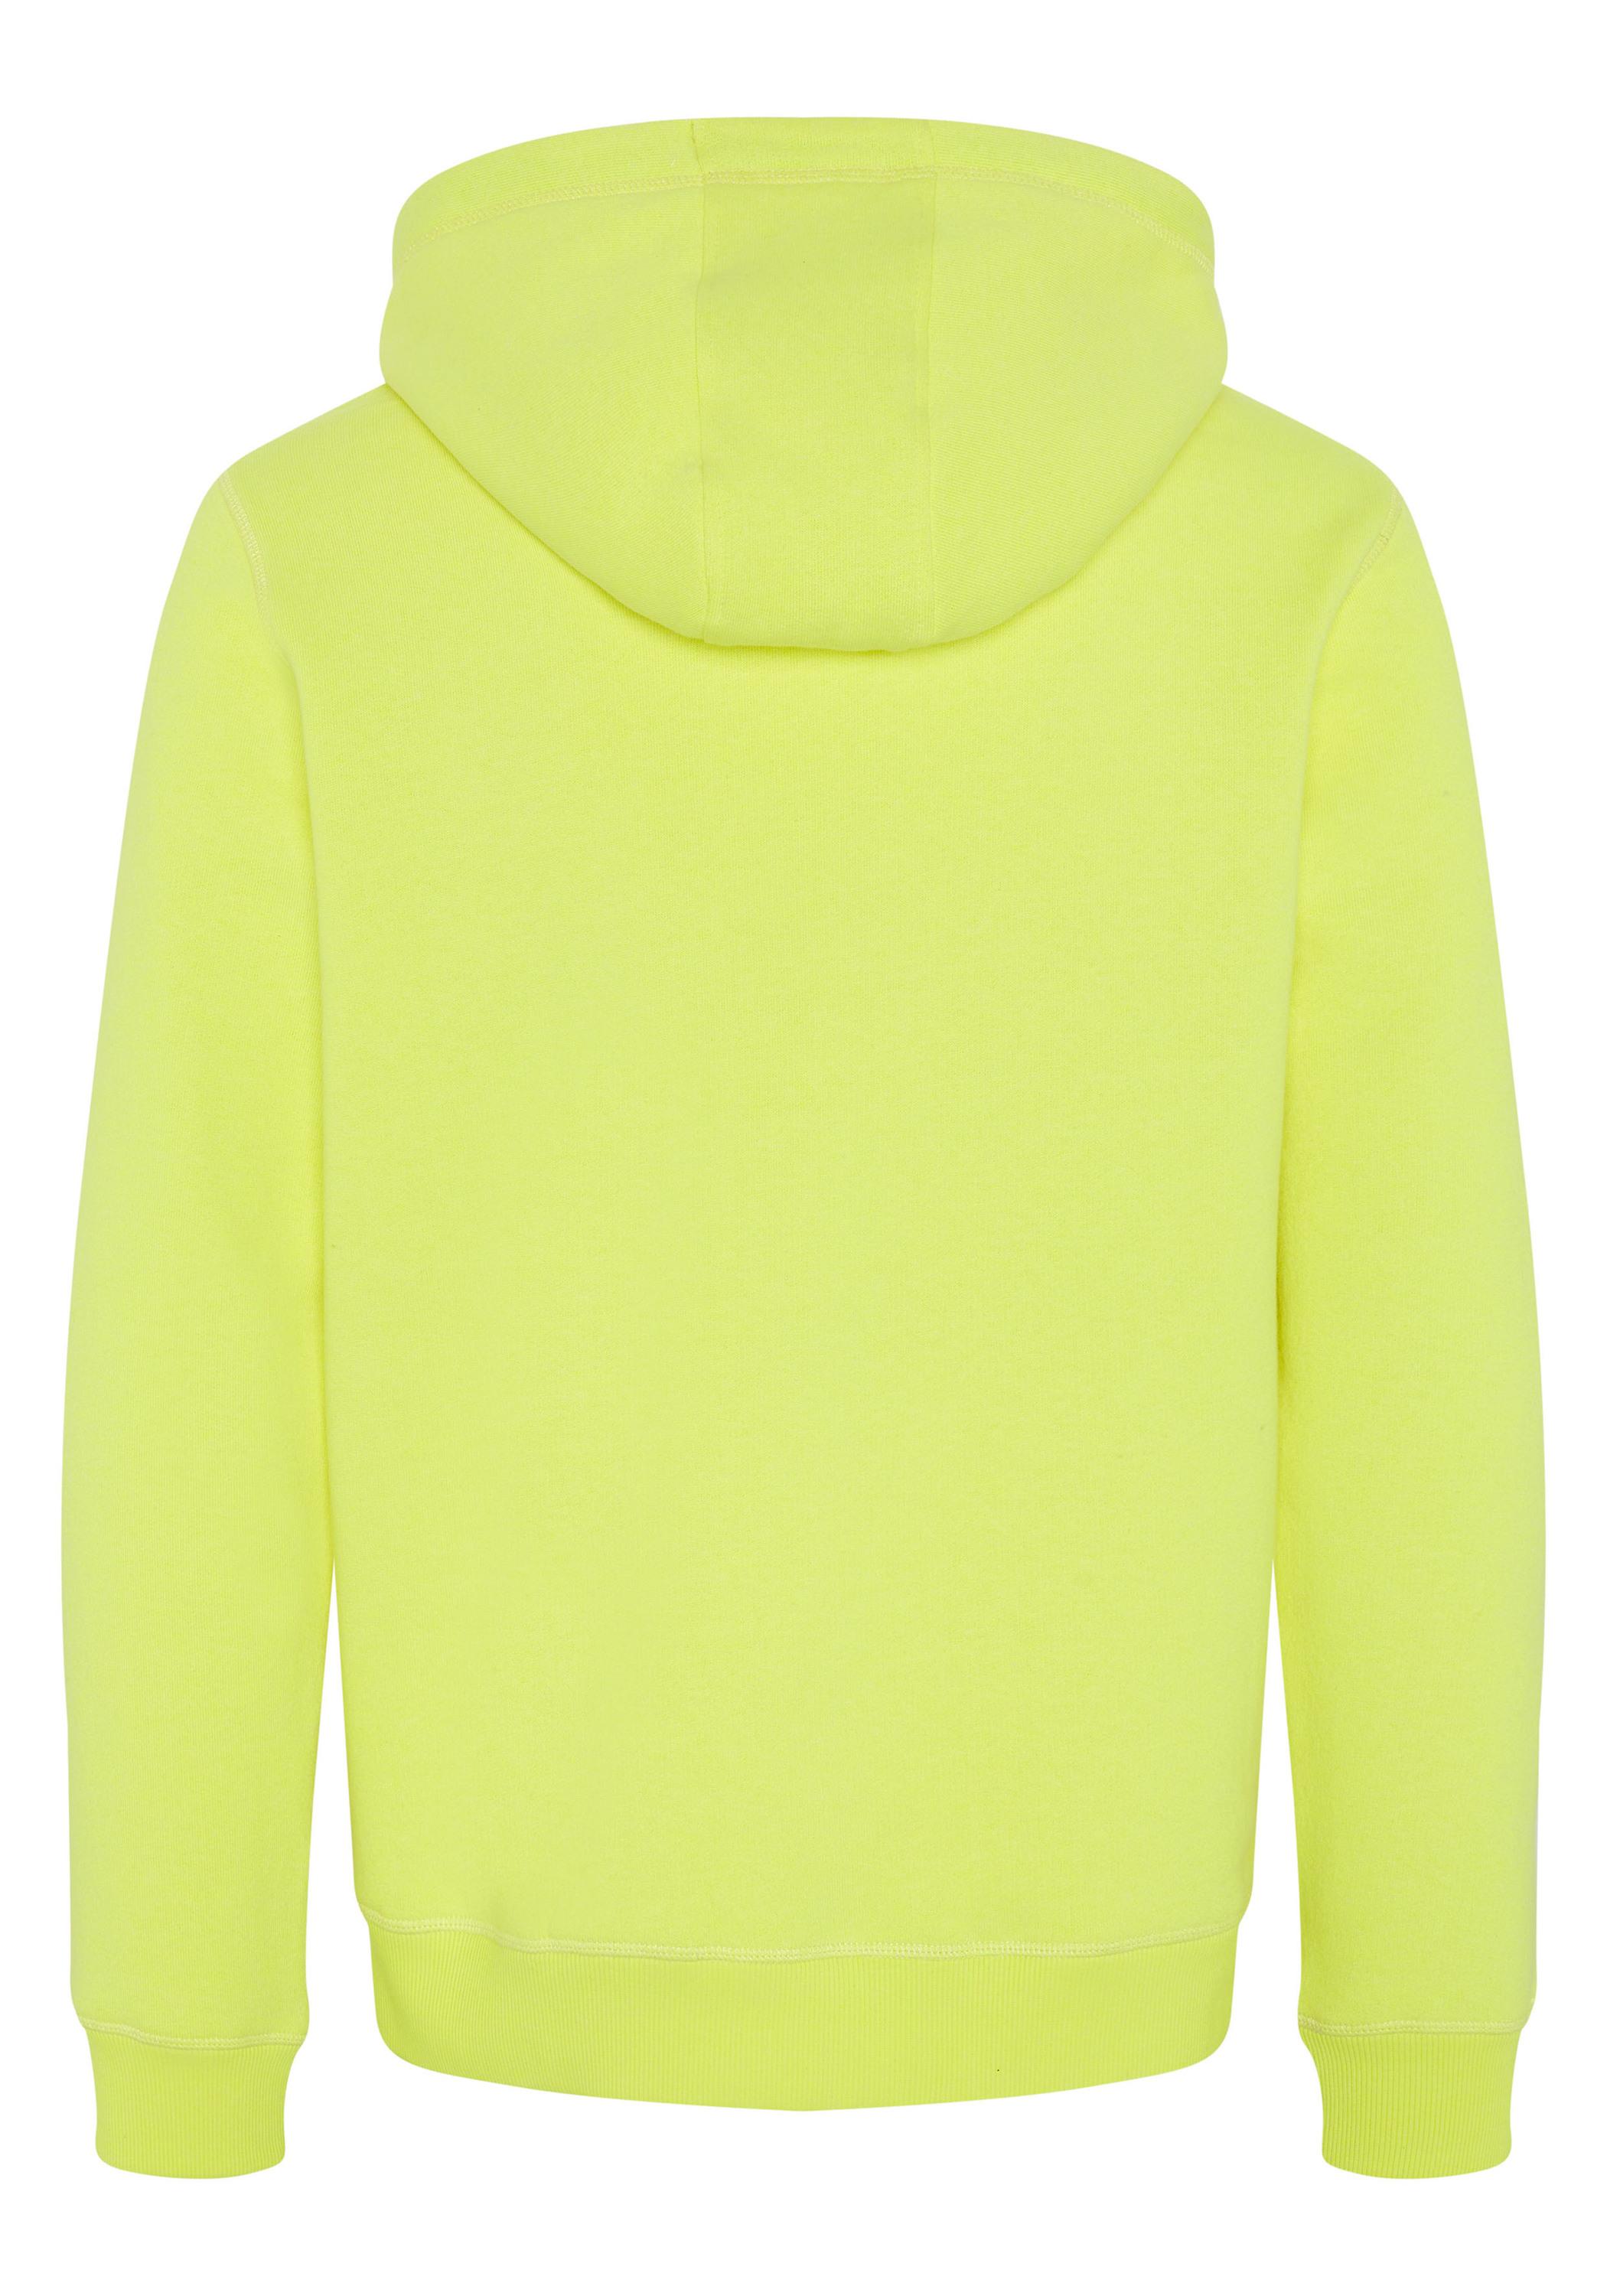 Herren im kaufen Sweatshirt Chiemsee Yellow SportScheck Safety Shop Kapuzensweatshirt Online von